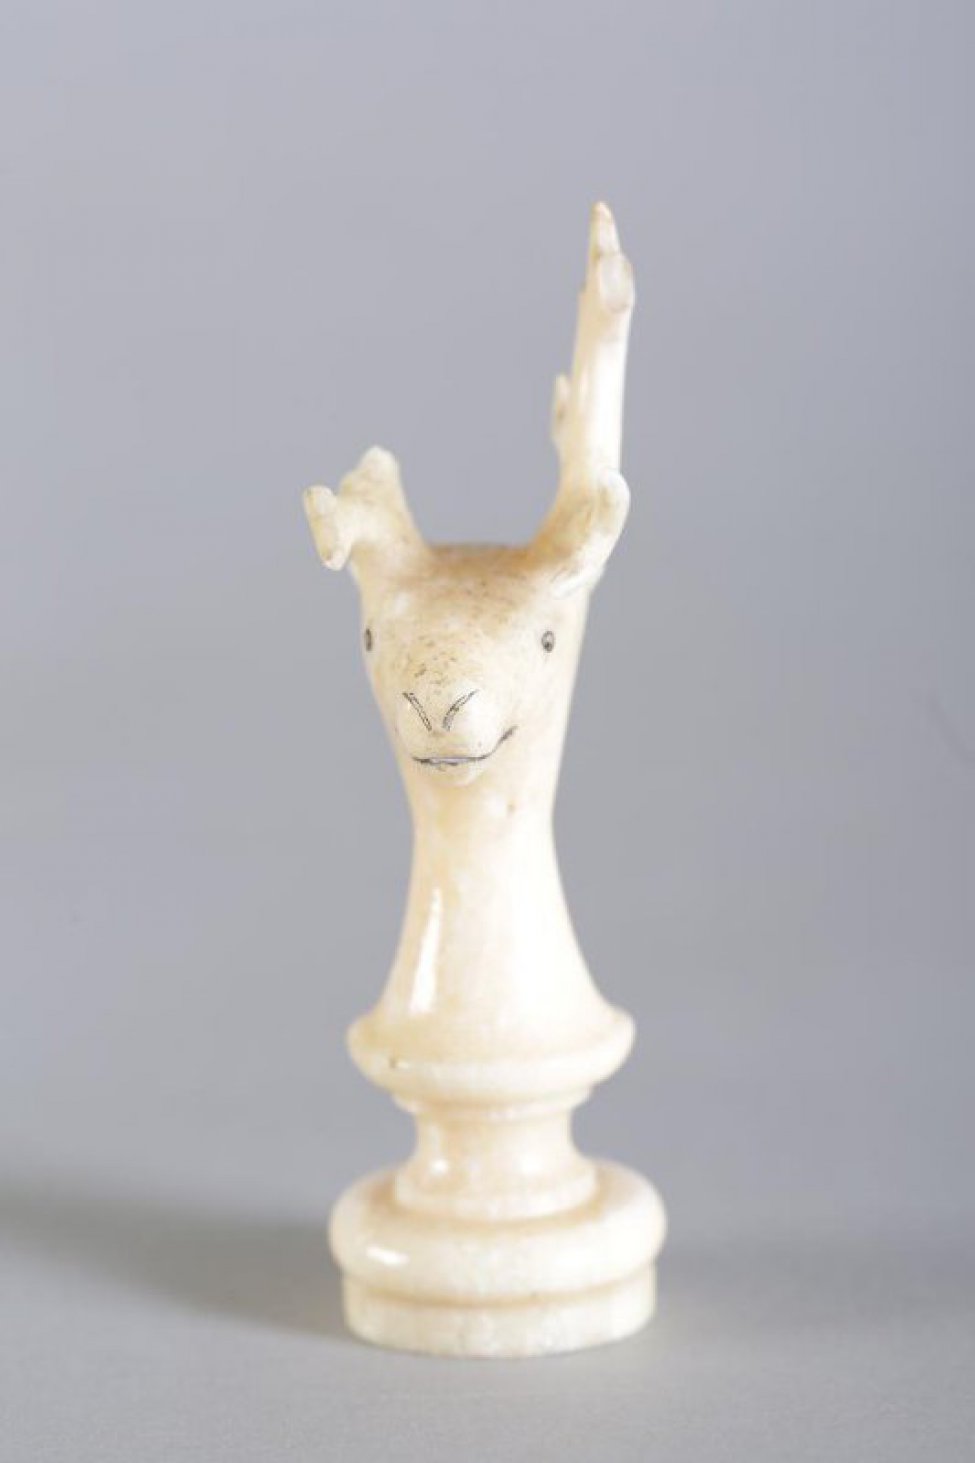 Шахматная фигура белого цвета в виде невысокой балясины, вверху заканчивающаяся головой рогатого оленя.  Маленькие круглые глаза, линия рта и кончик носа  обозначены неглубокой резьбой (процарапыванием) с черной тонировкой. Вся фигура выполнена из одного куска бивня.